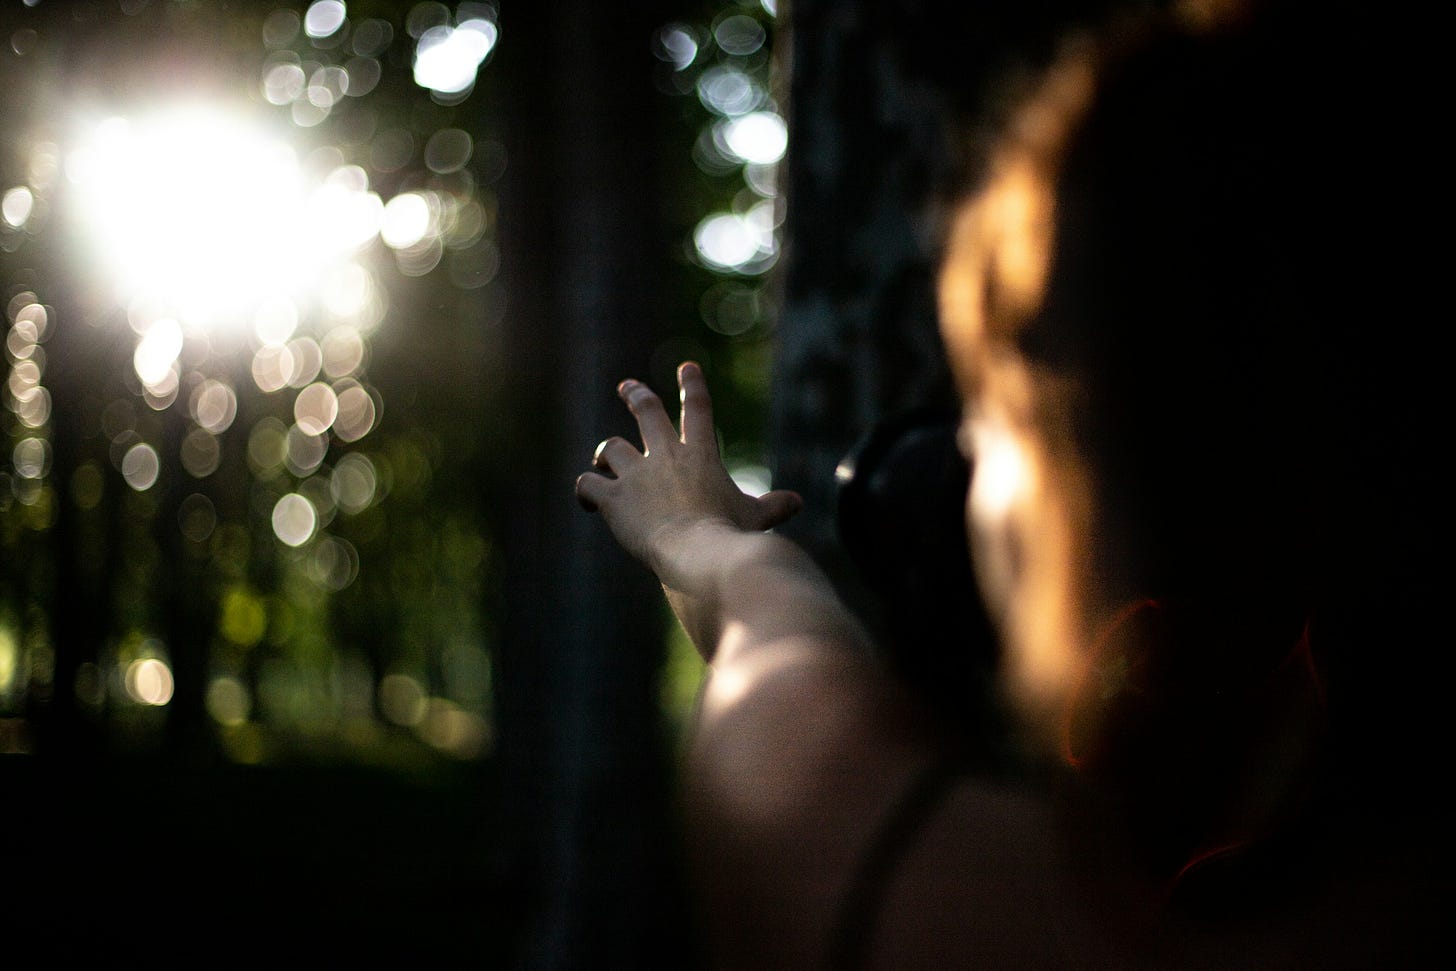 Ripresa sfocata di una figura umana femminile che protende il braccio sinistro in avanti, in mezzo a un bosco, puntando verso una fonte luminosa che sta sullo sfondo in alto a sinistra.